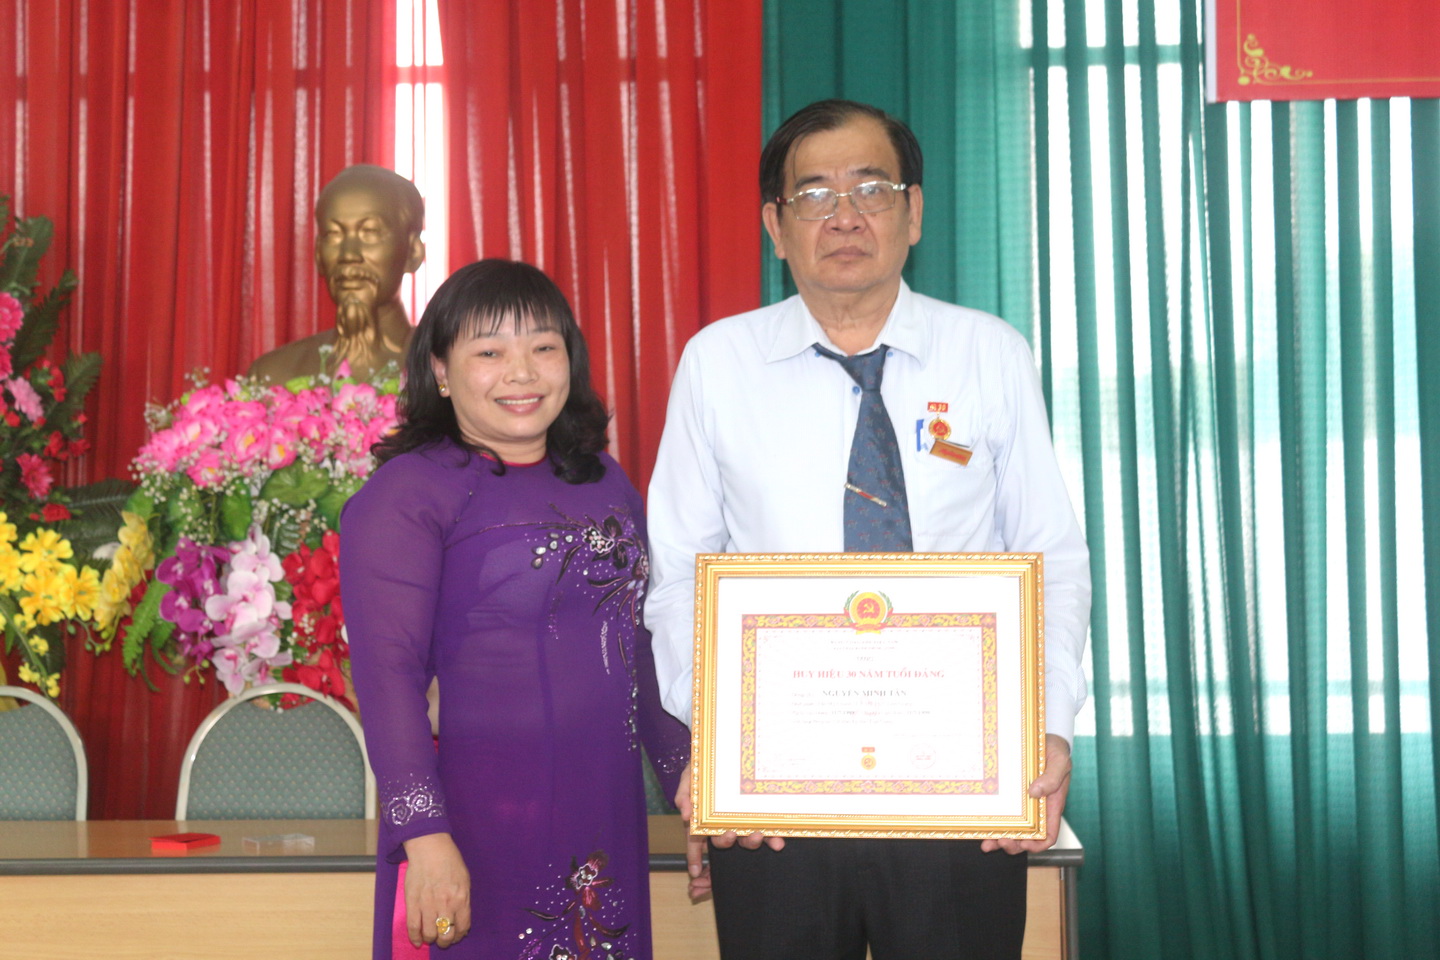 Đồng chí Thái Ngọc Bảo Trâm trao Huy hiệu 30 năm tuổi đảng cho đồng chí Nguyễn Minh Tân. Ảnh: HỒNG LÊ